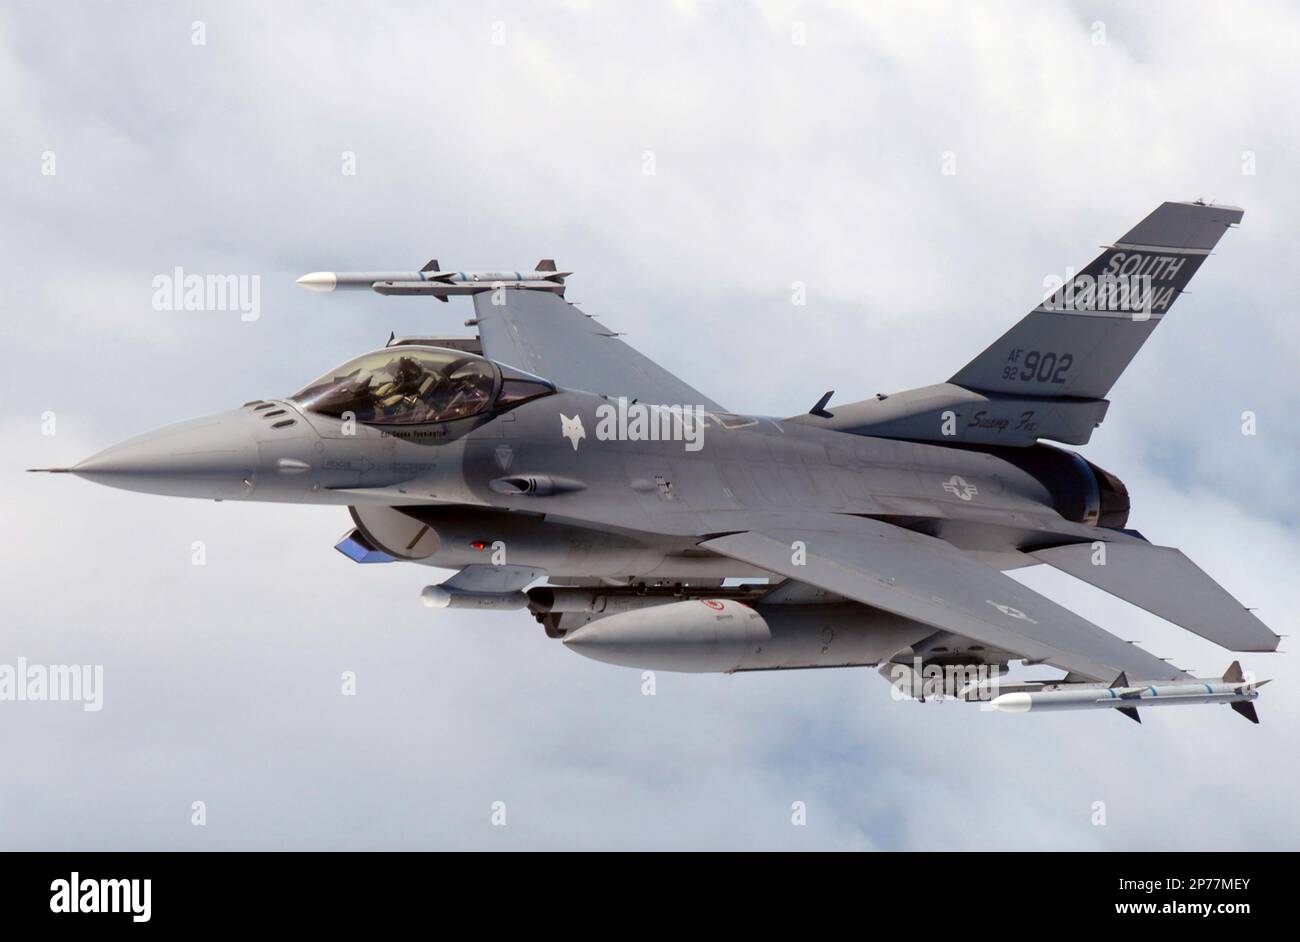 GENERAL DYNAMICS F-16C Fighting Falcon, combattente multirolo della Guardia Nazionale aerea del South Carolina, con missili aria-aria, bombe, pod di targeting e pod ECM. Foto Stock